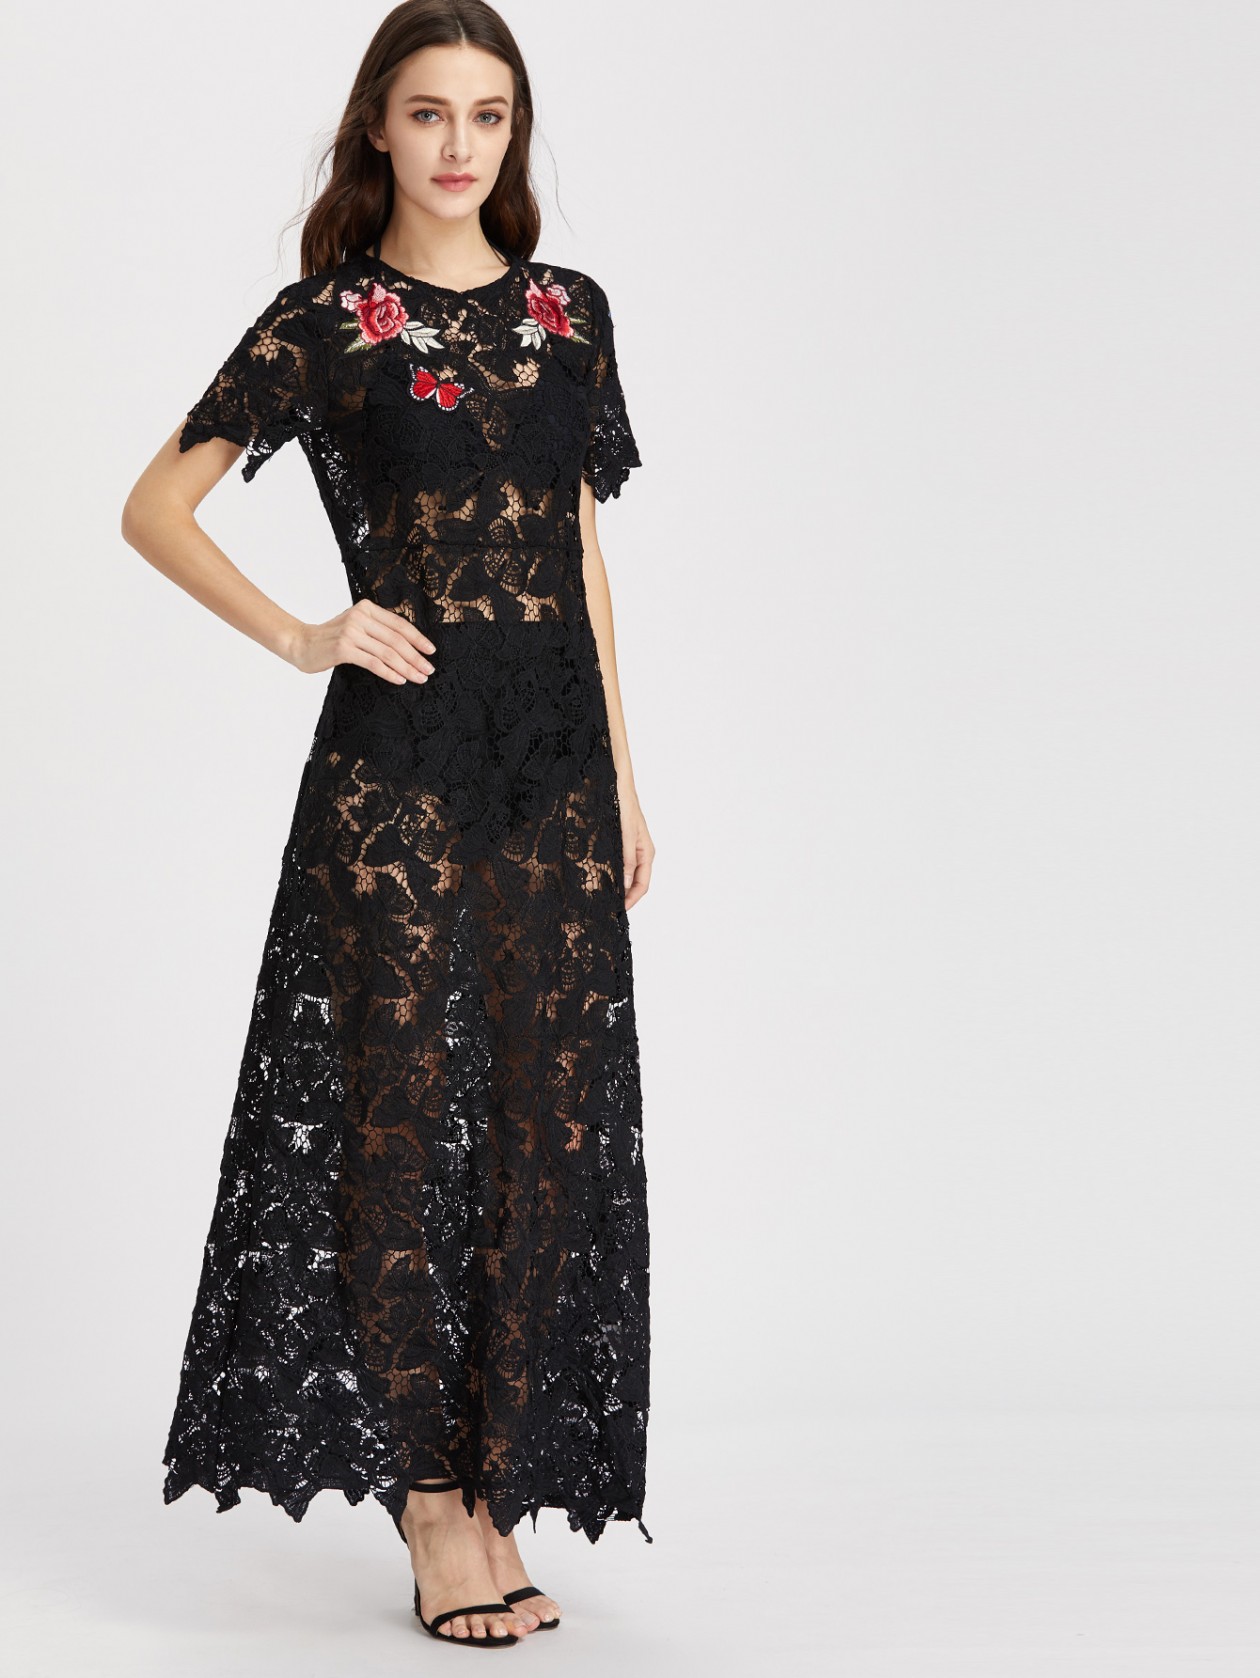 Black Rose Embroidered Dress